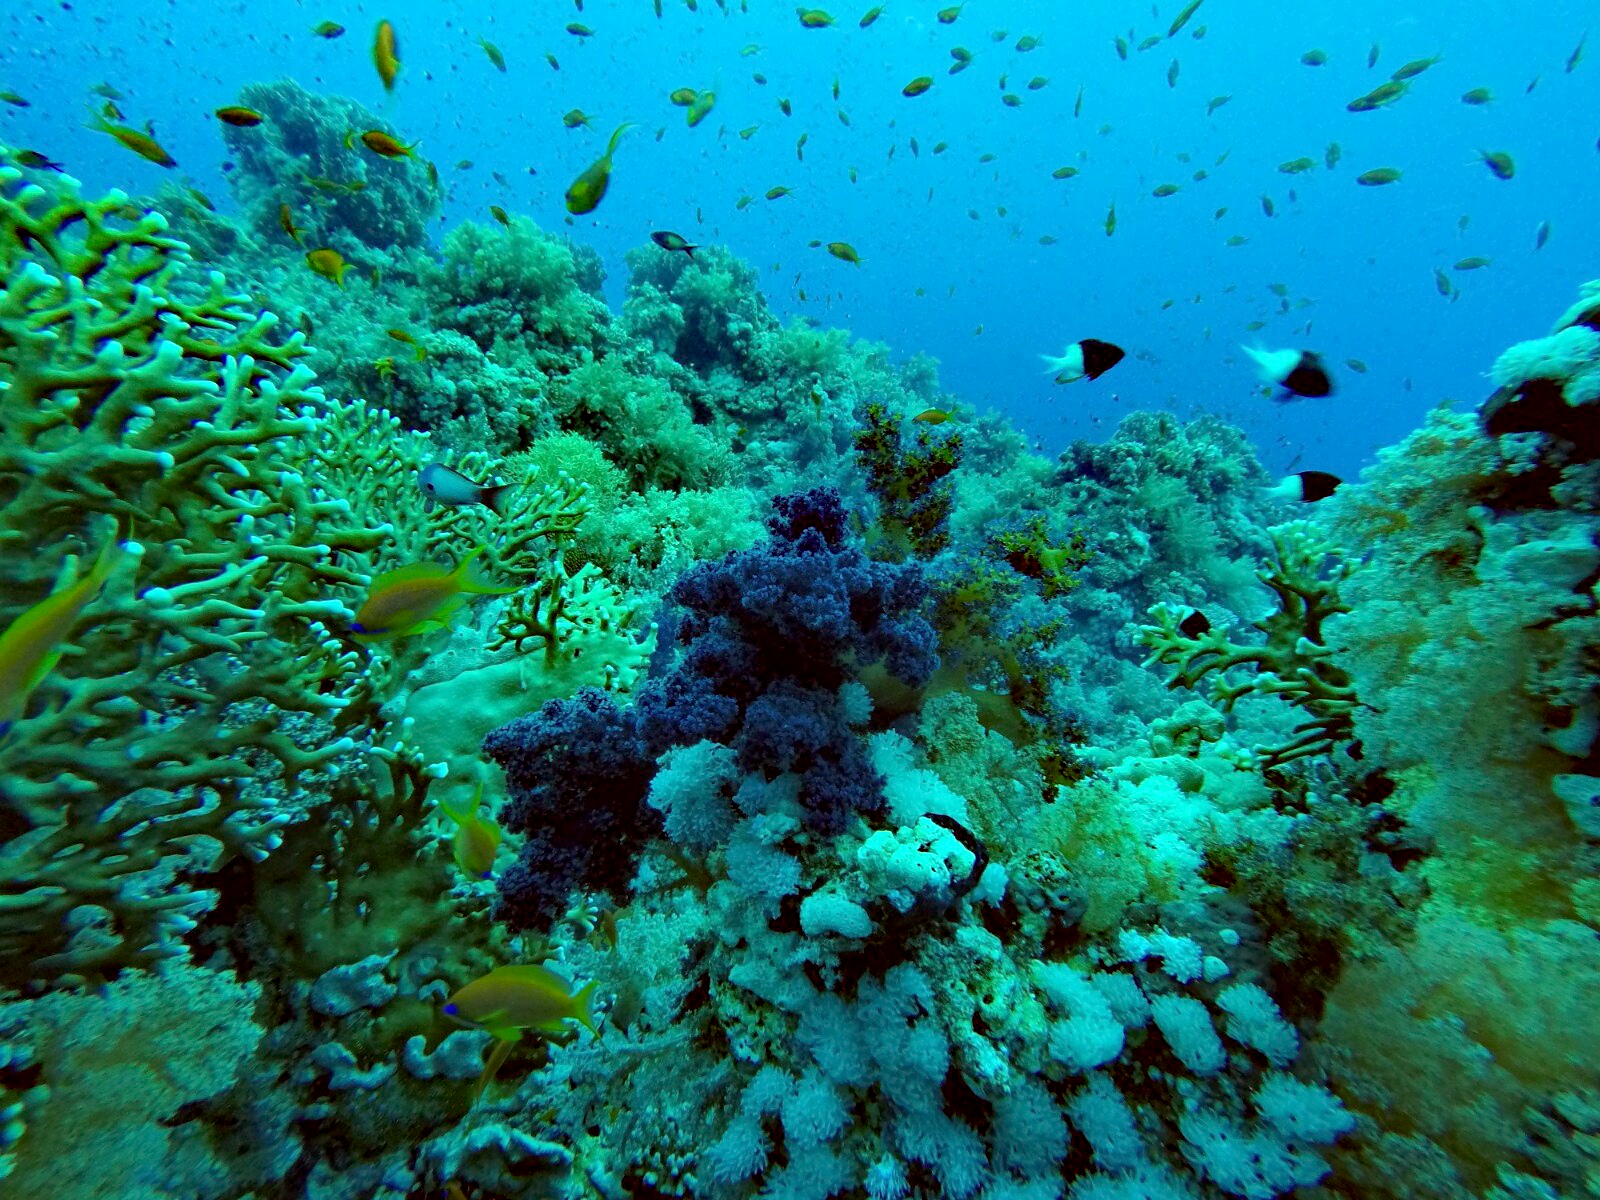 Riff-Gesundheit: Ein buntes Korallenriff mit Feuerkorallen